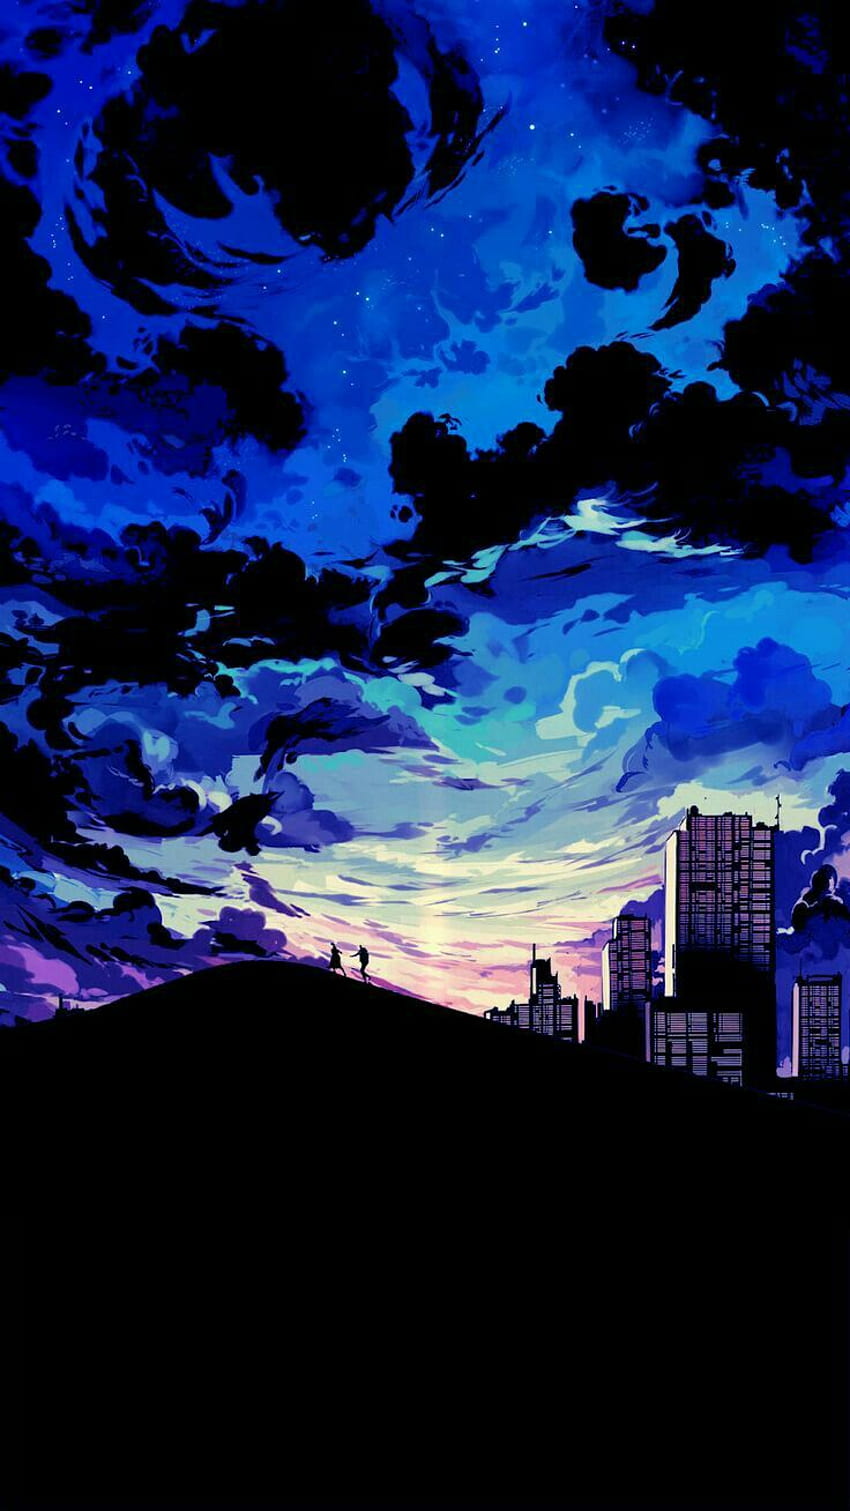 Bunu seviyorum çünkü şehrin ve dağın özelliği çok çeşitli maviler getiriyor. Anime düşkünleri iphone, paysage magnifique, Paysage manga, Blue Scenery HD telefon duvar kağıdı